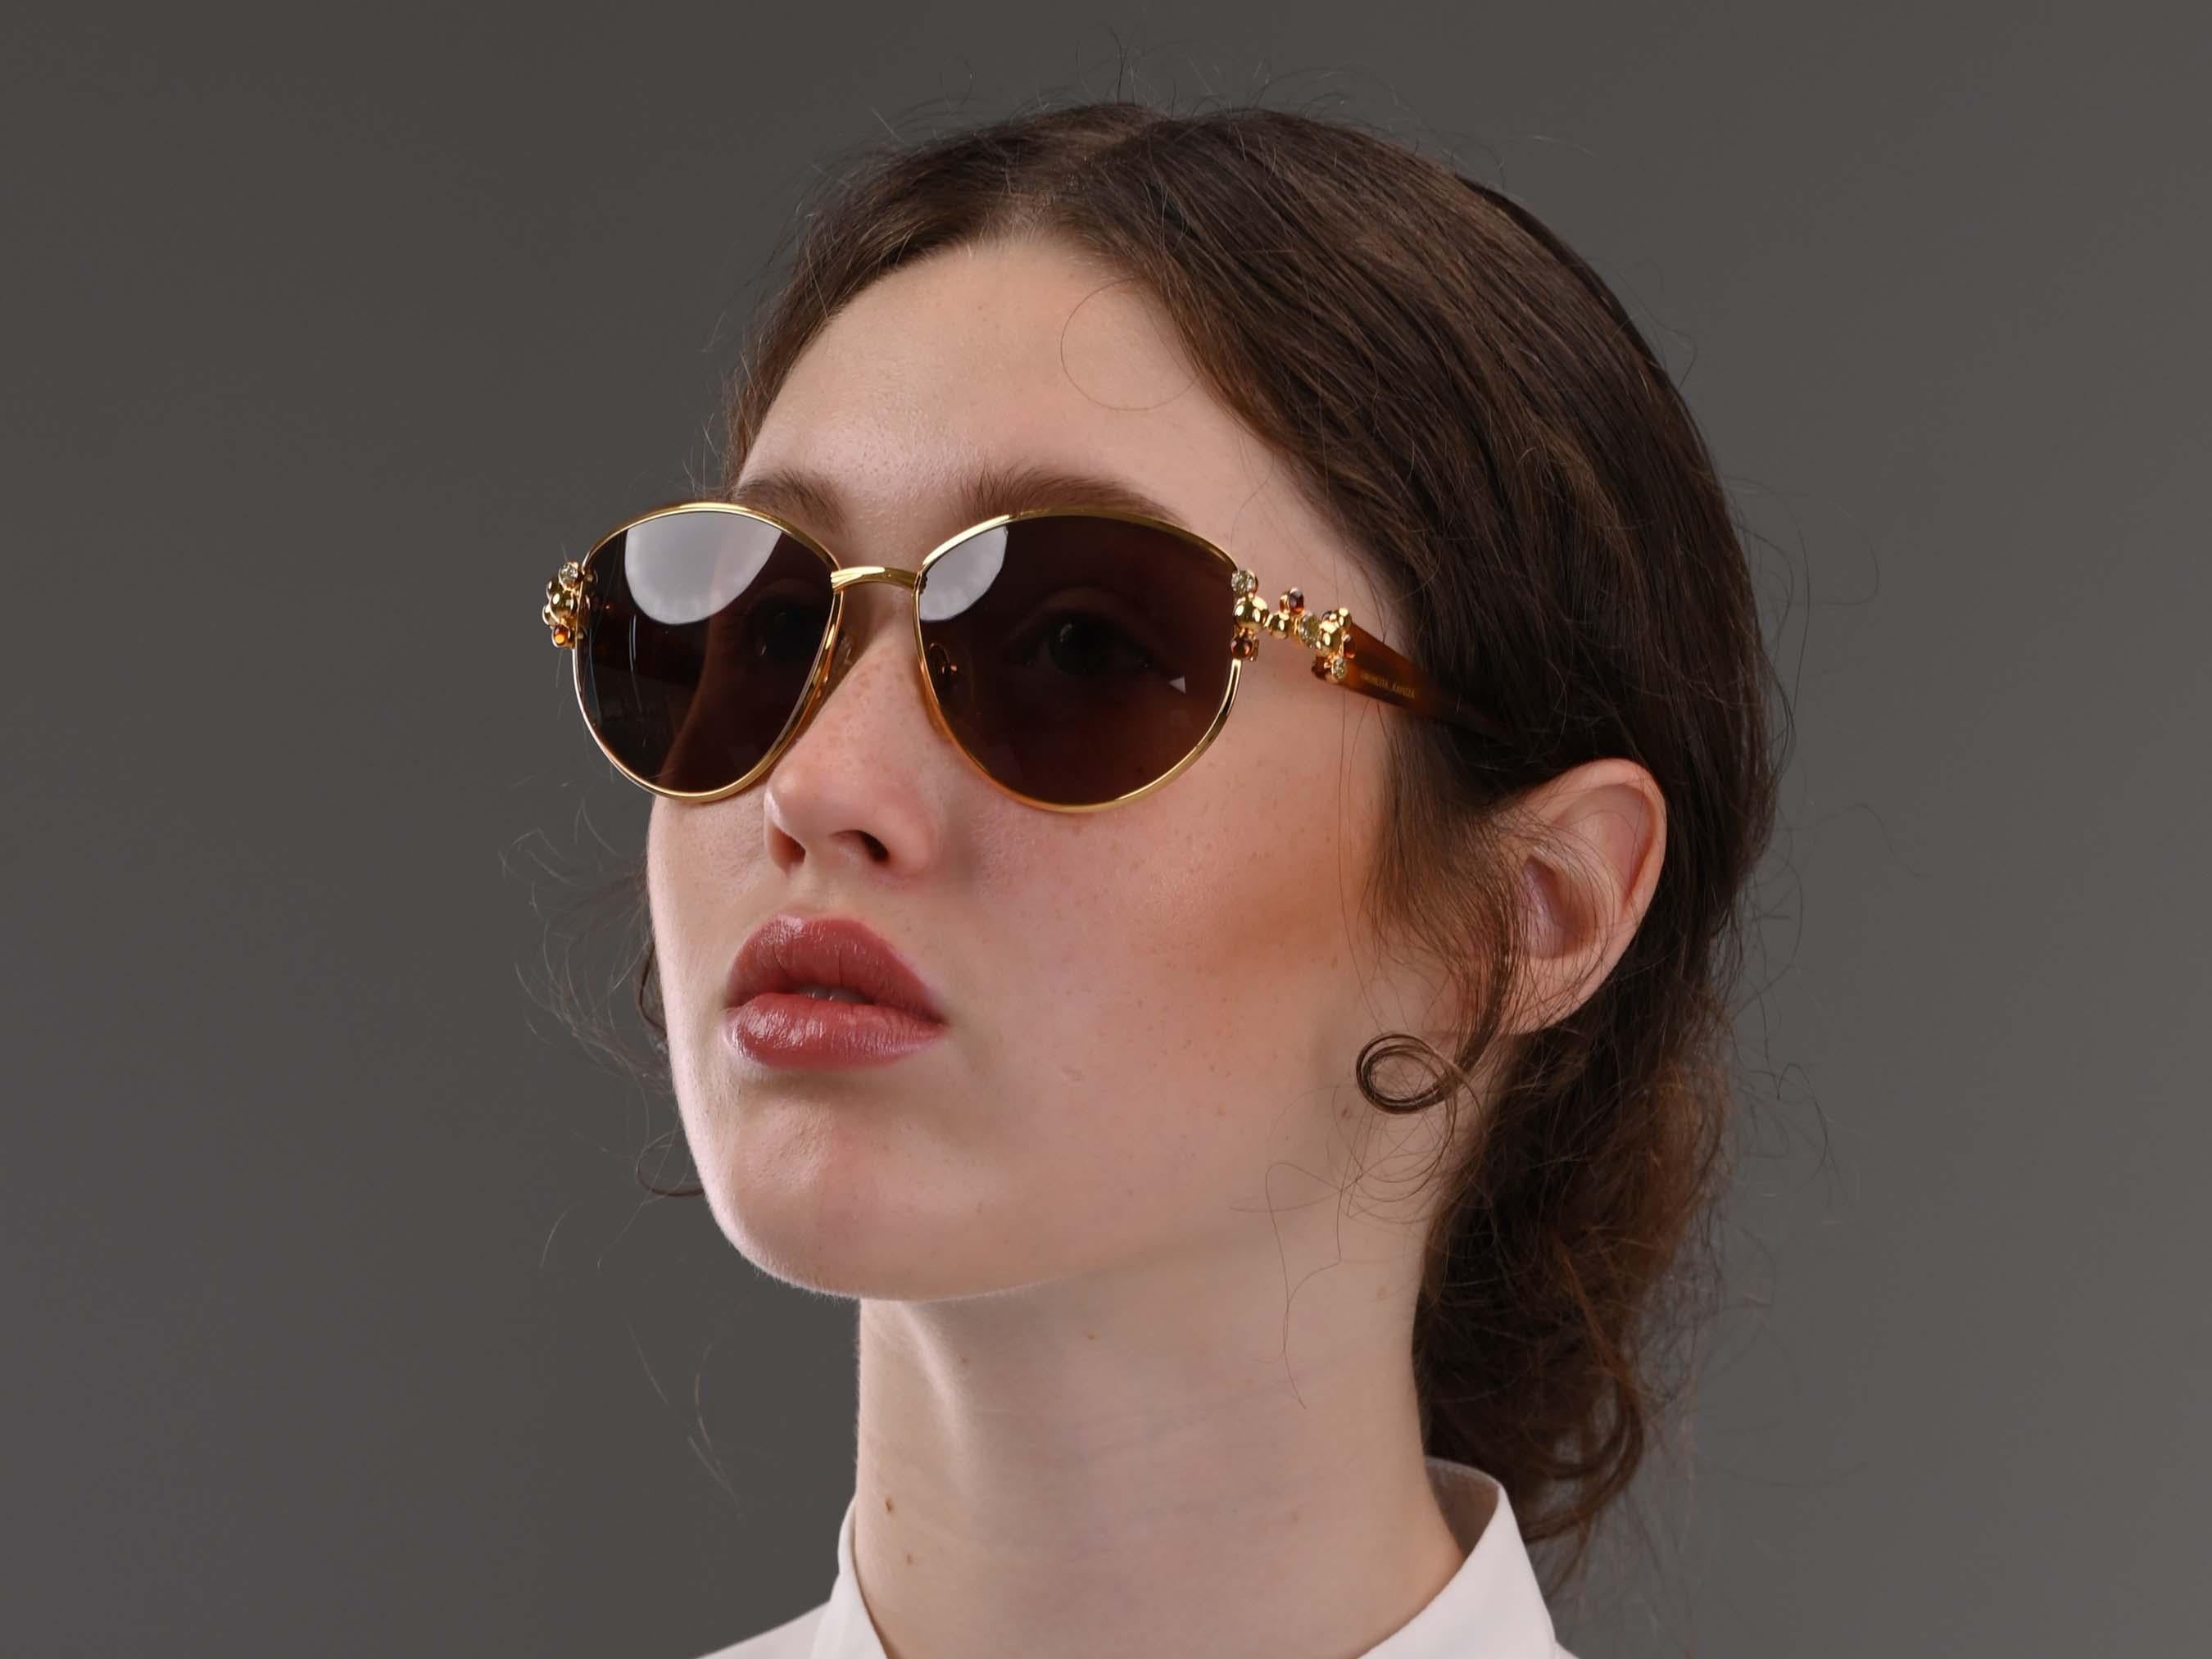 Simonetta Ravizza jewelry vintage sunglasses For Sale 1